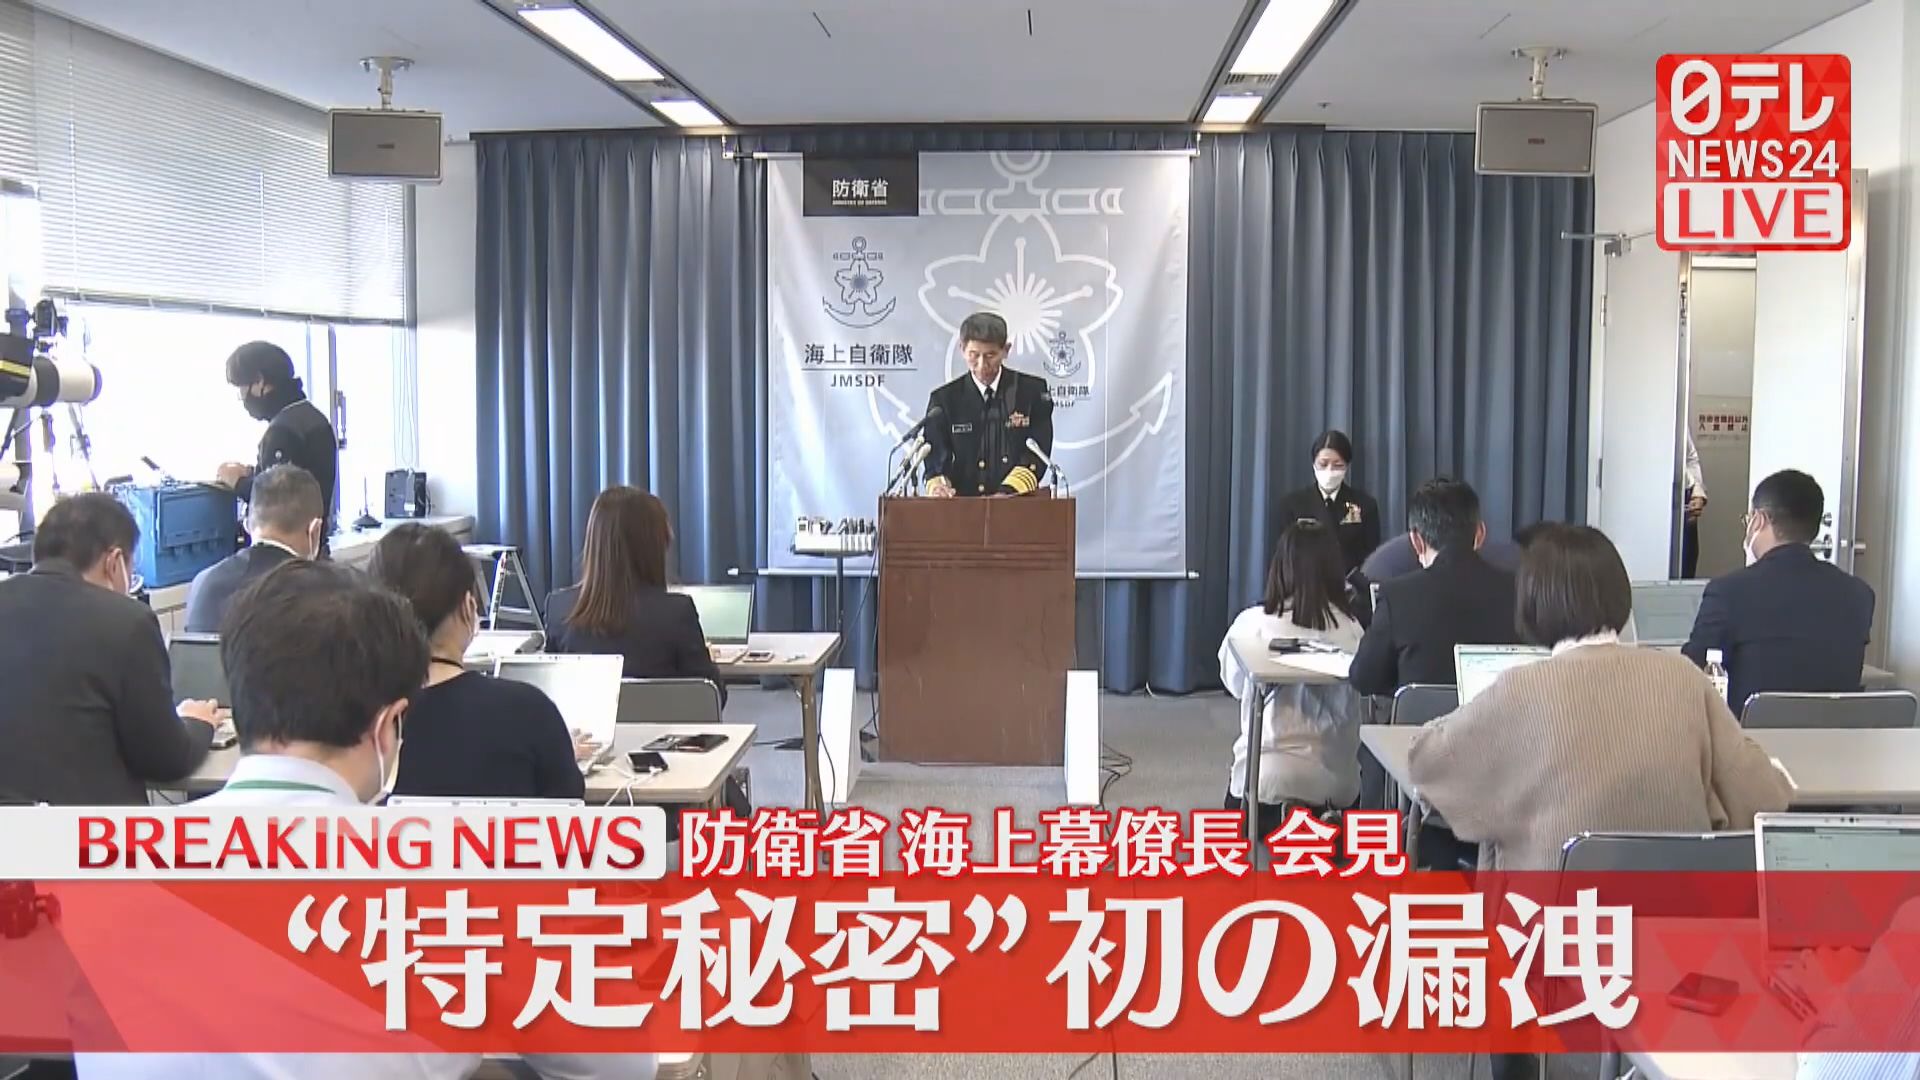 日本首次有軍官涉違「特定秘密保護法」被免職查處